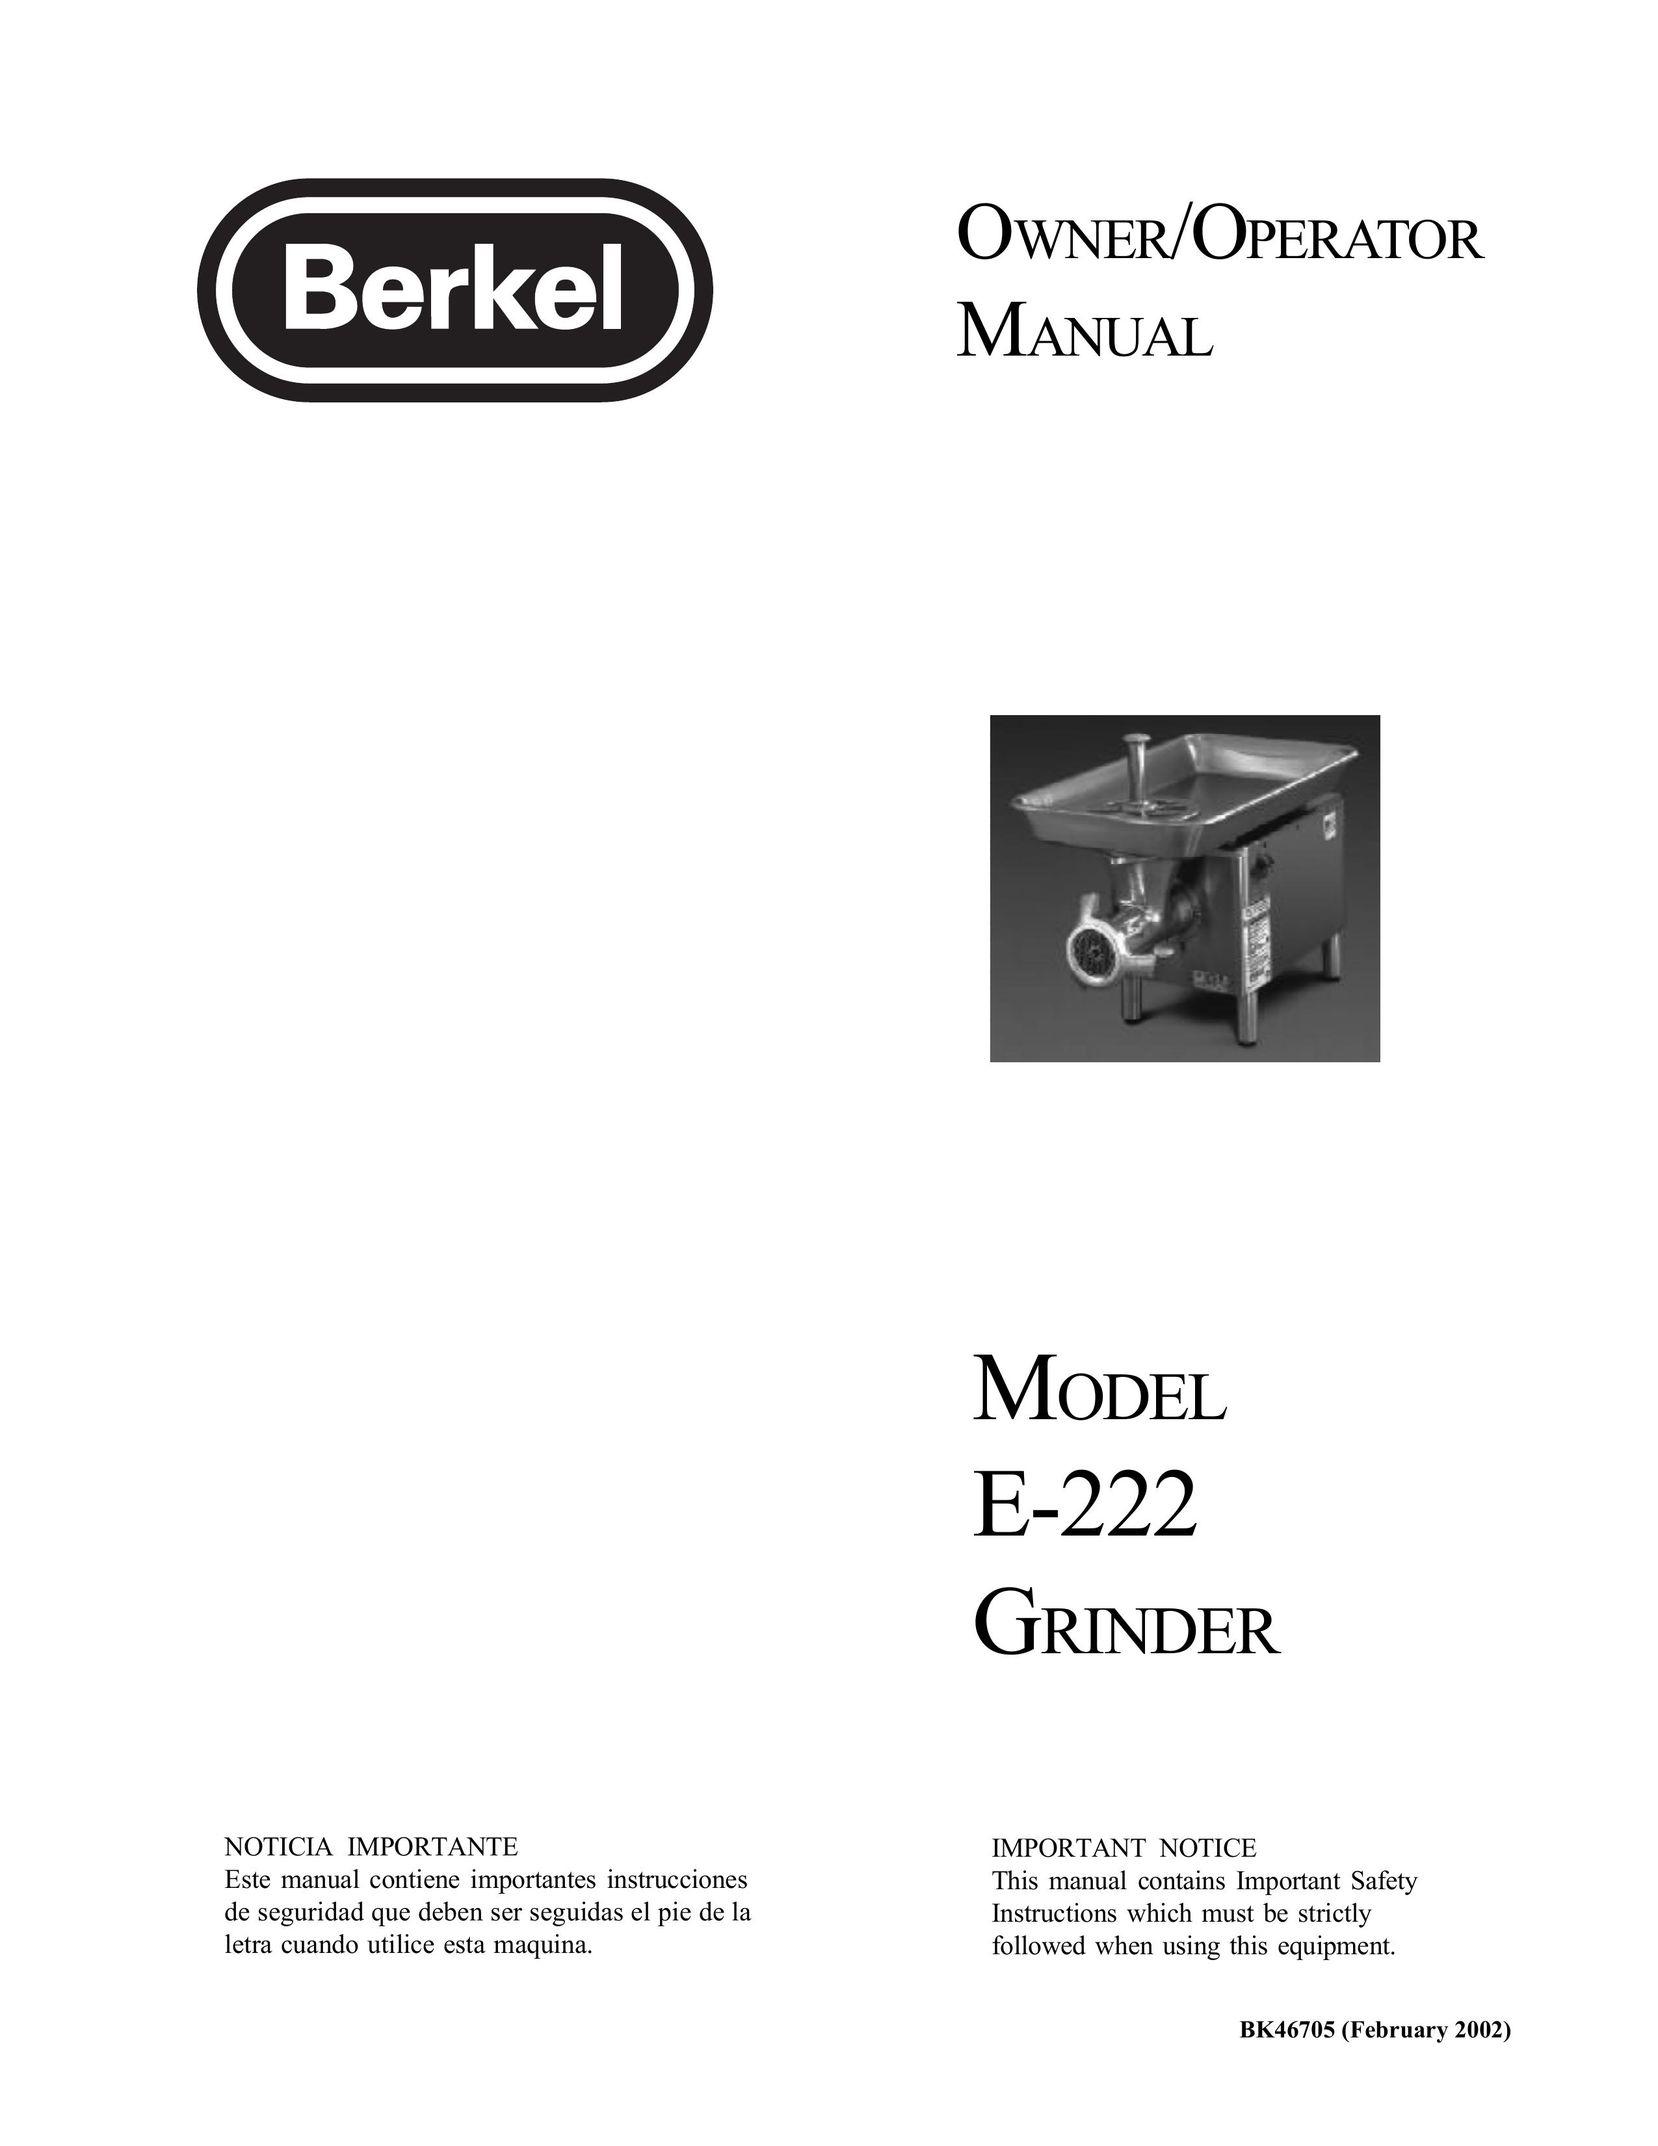 Berkel E-222 Grinder User Manual